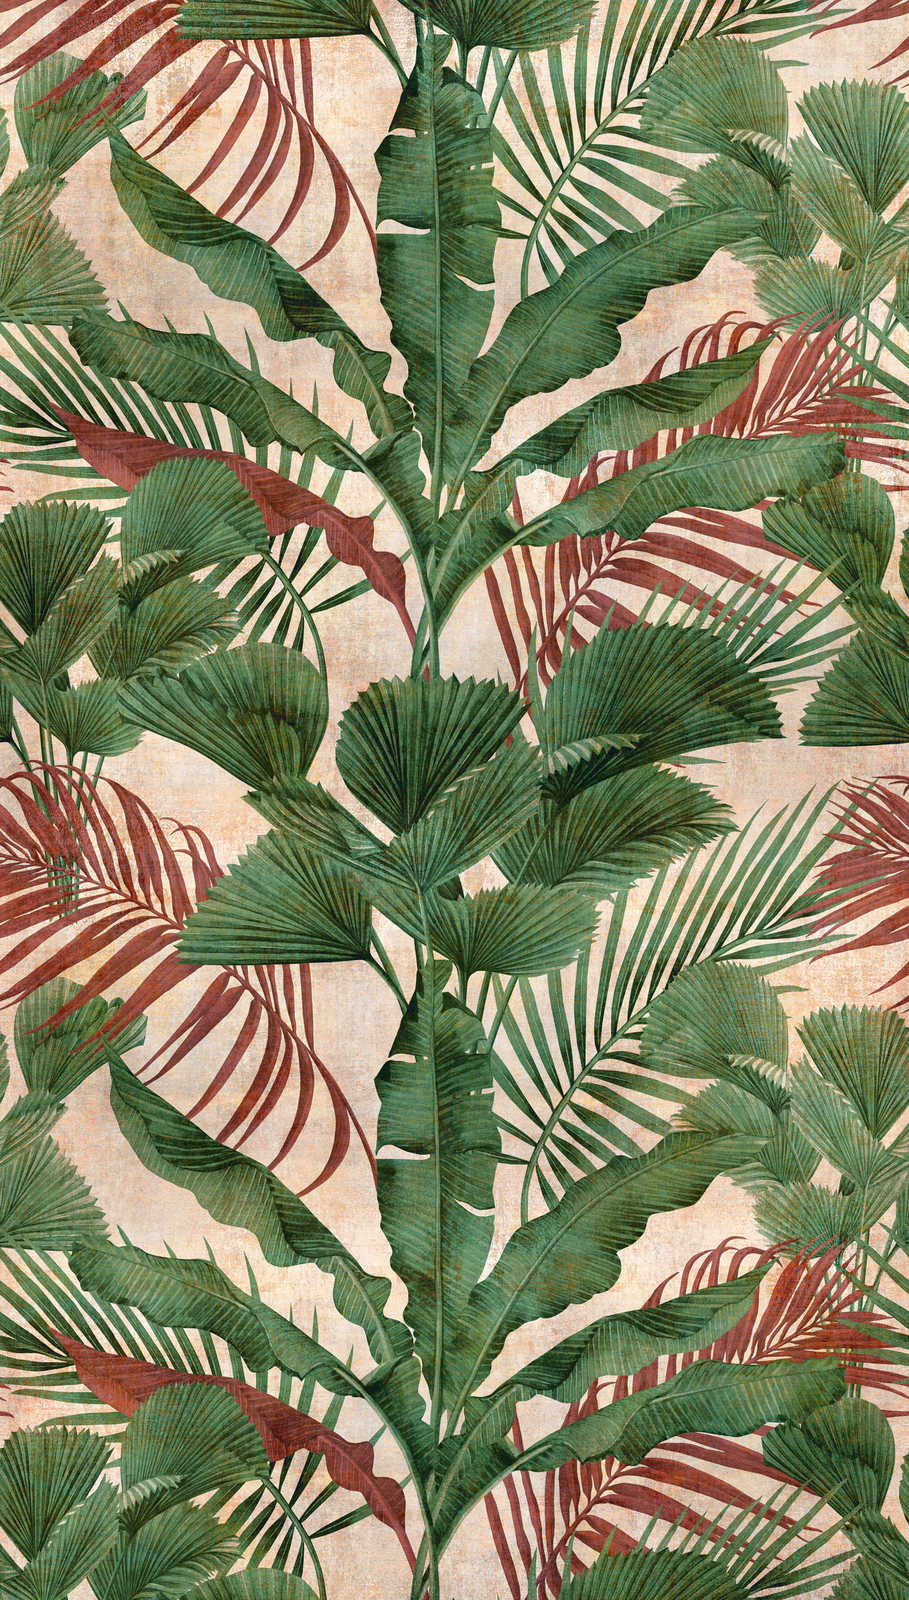             Jungle behang met tropische planten - groen, beige, rood
        